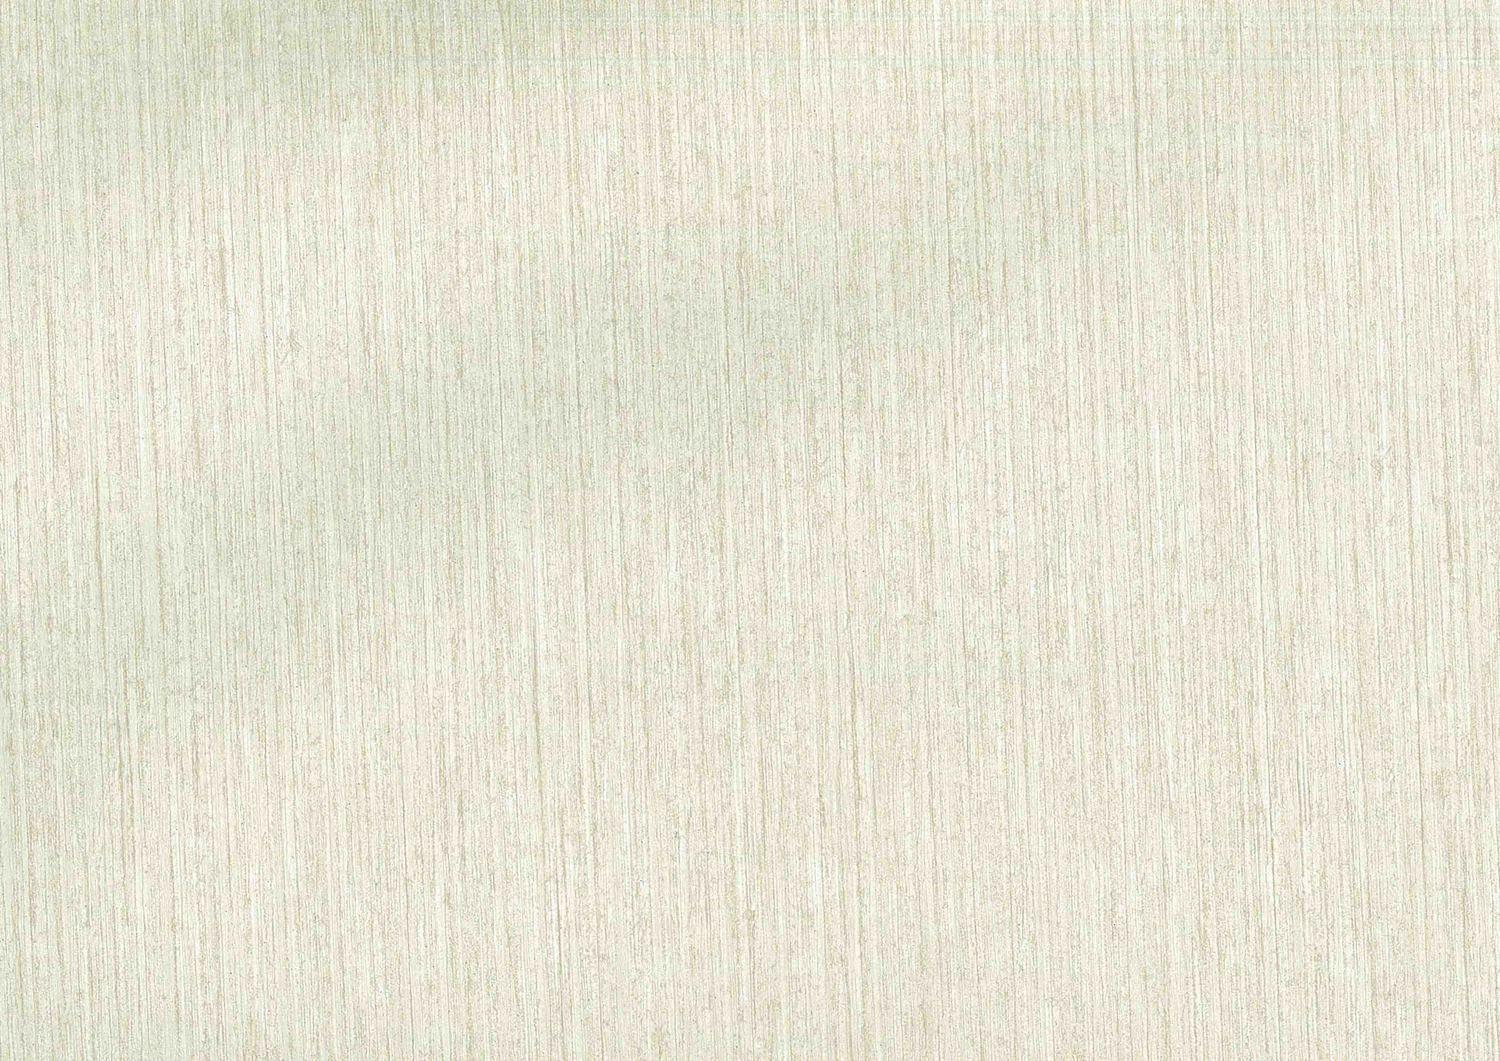 Wallpaper Dinding Polos Desain interior rumah cat putih yang diterapkan  